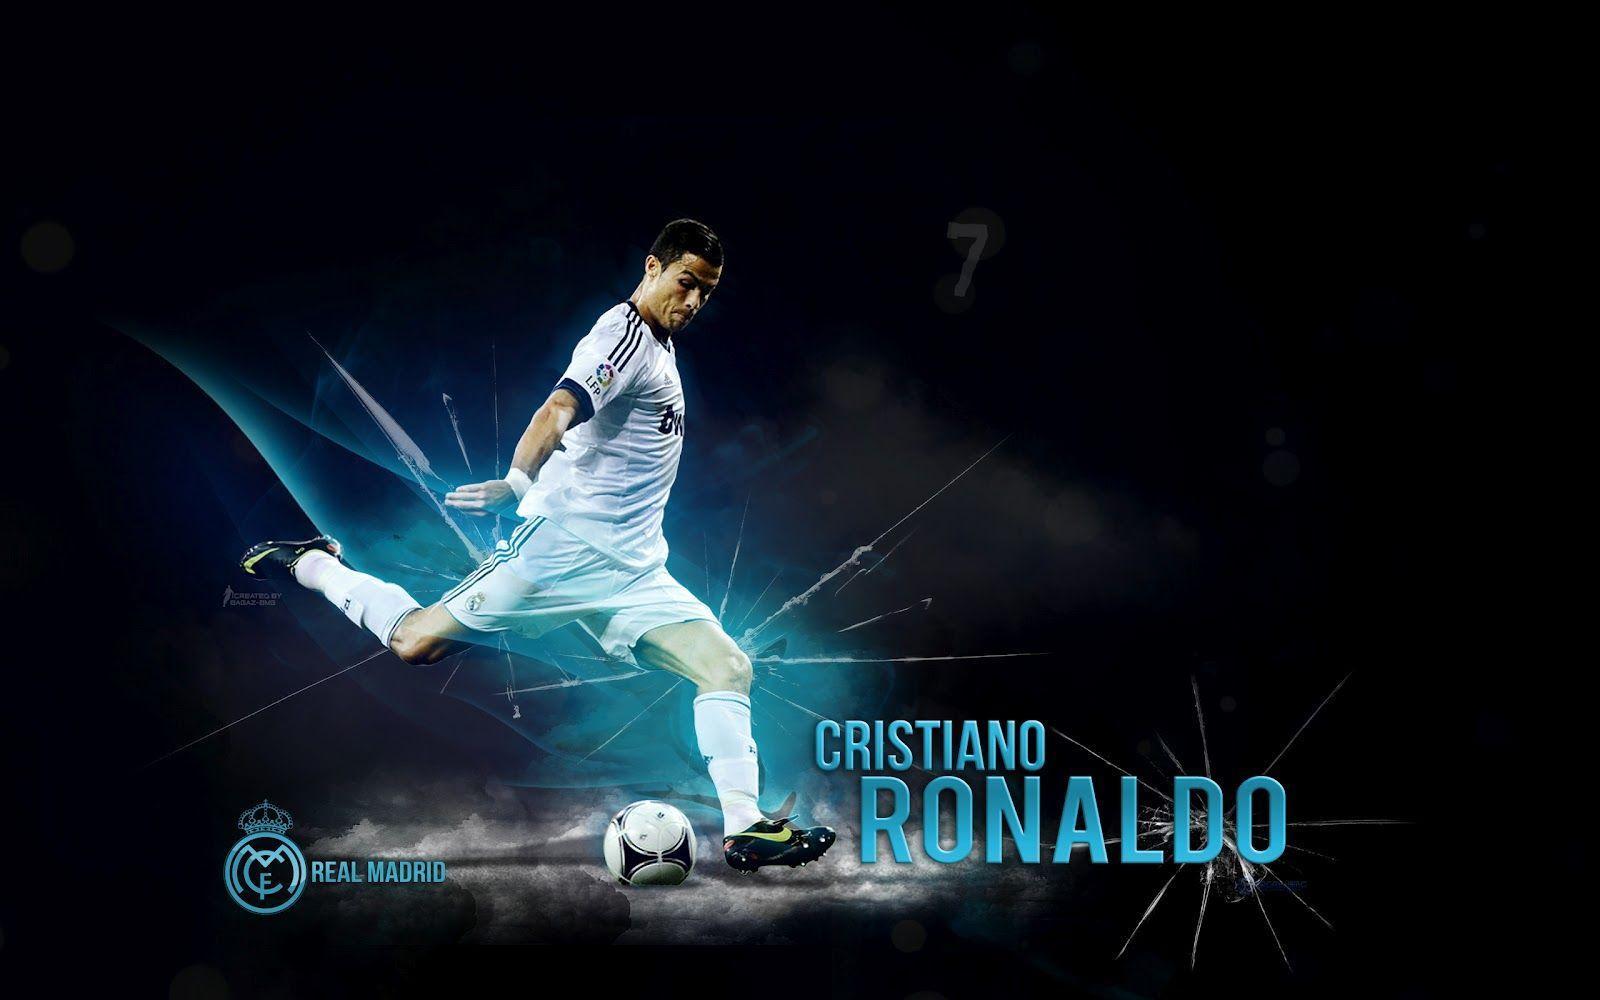 Cristiano Ronaldo Wallpaper Hd